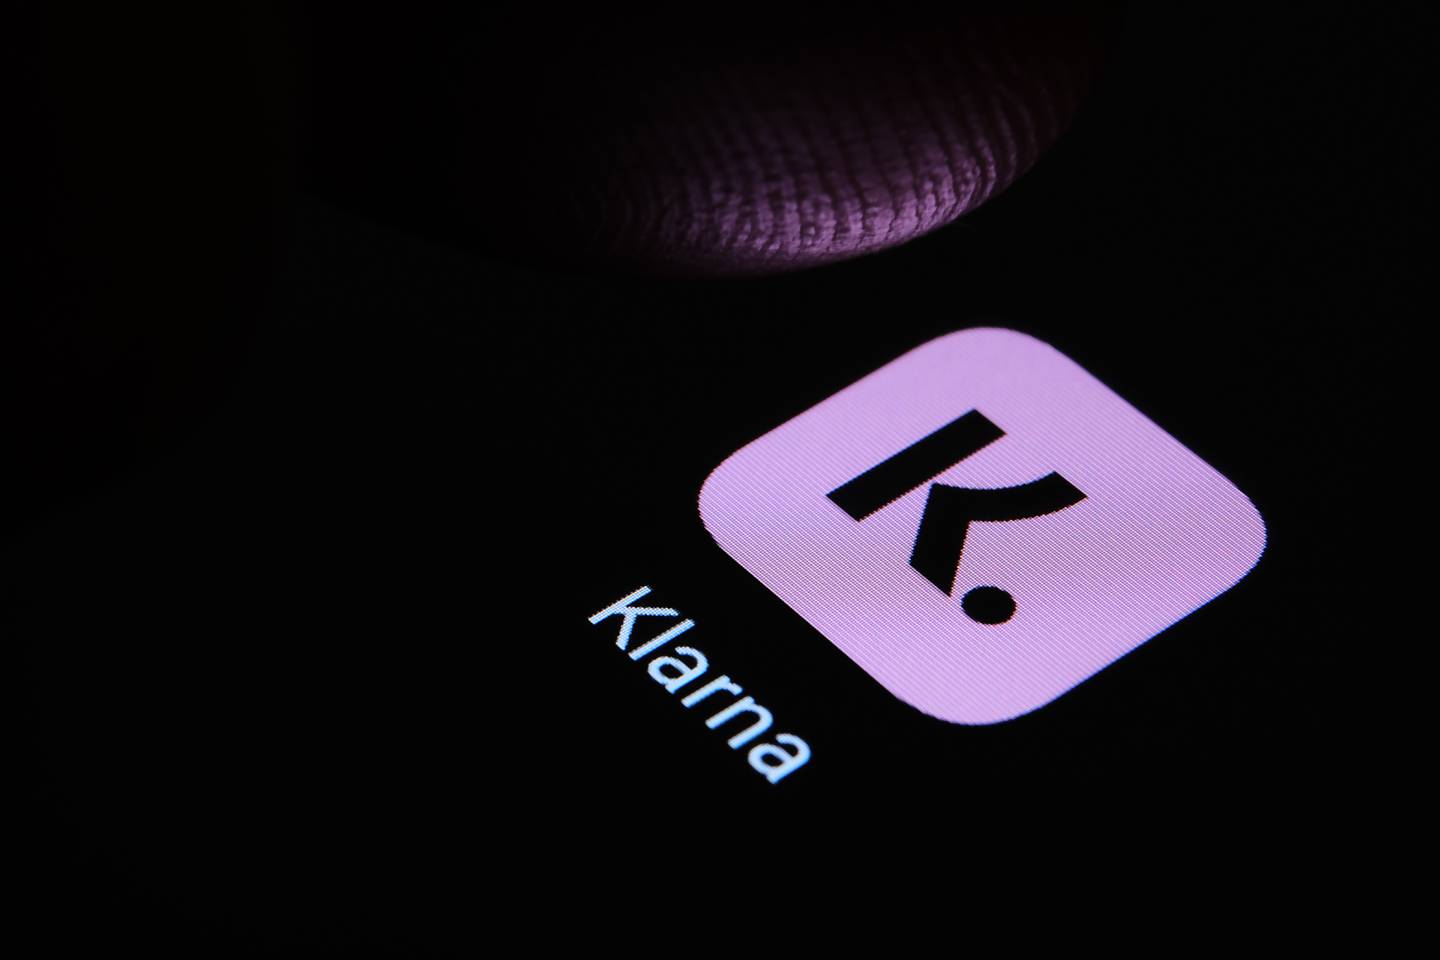 Klarna app on a black screen.